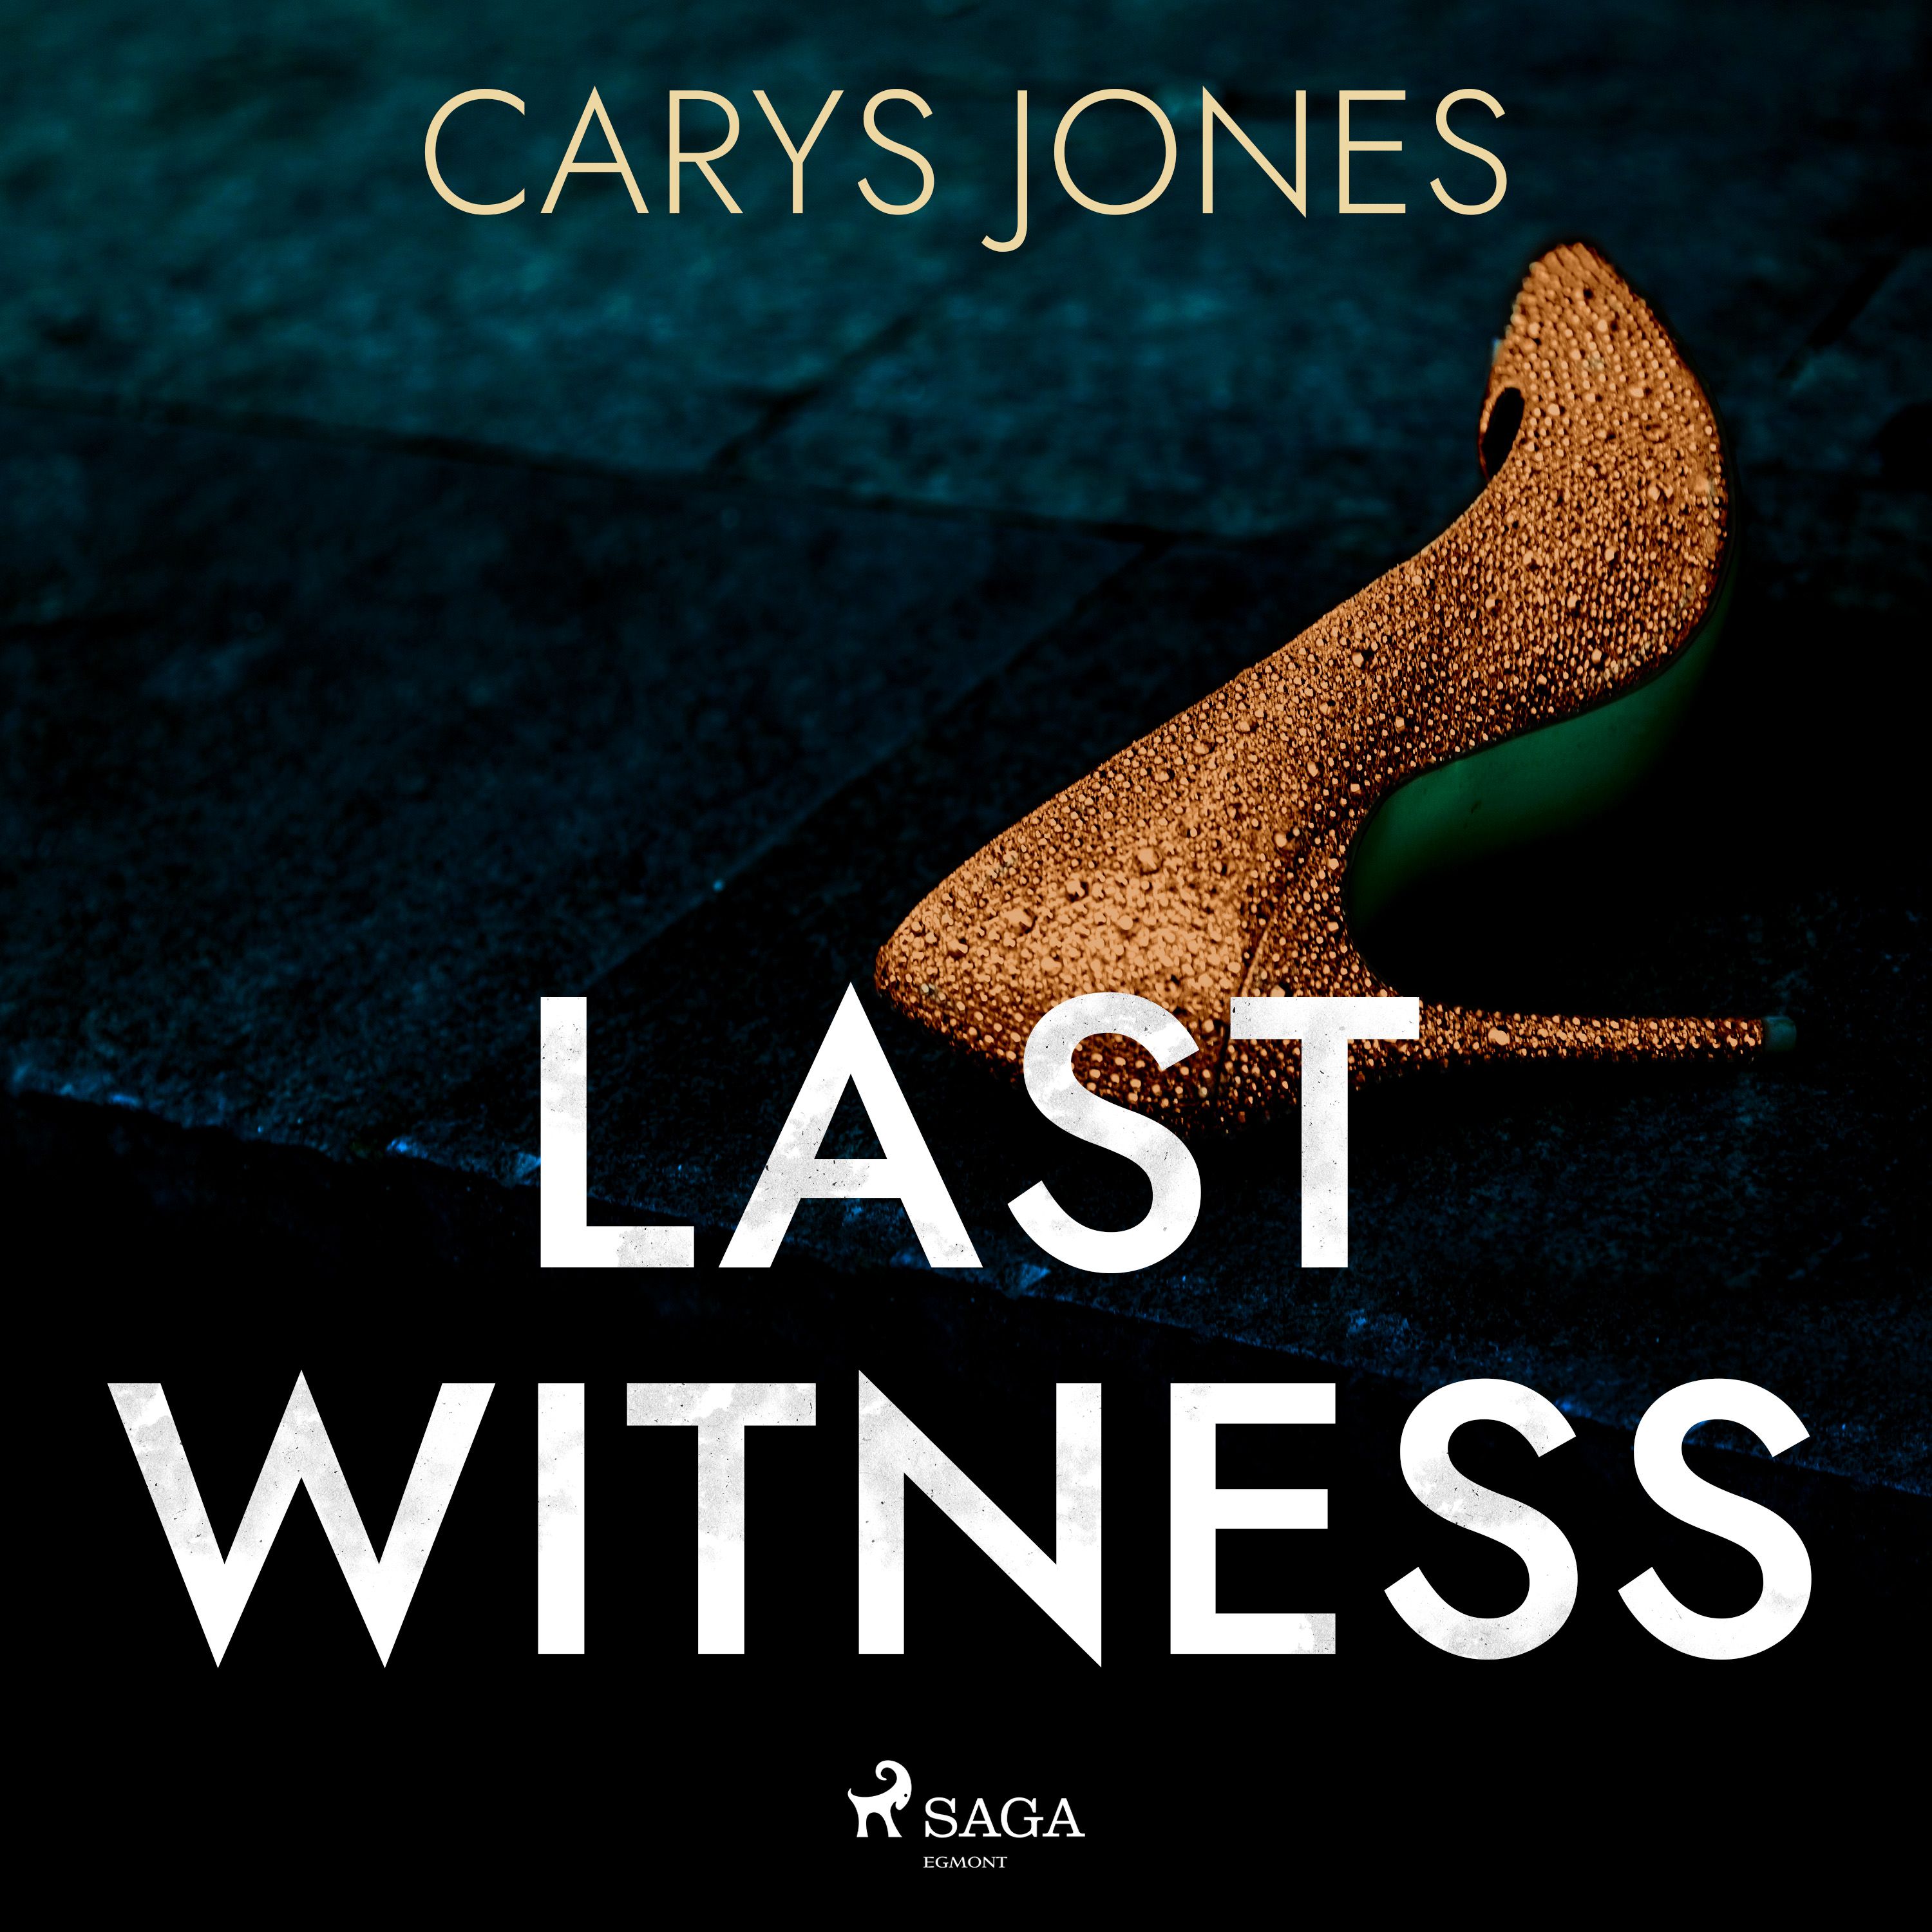 Last Witness, ljudbok av Carys Jones